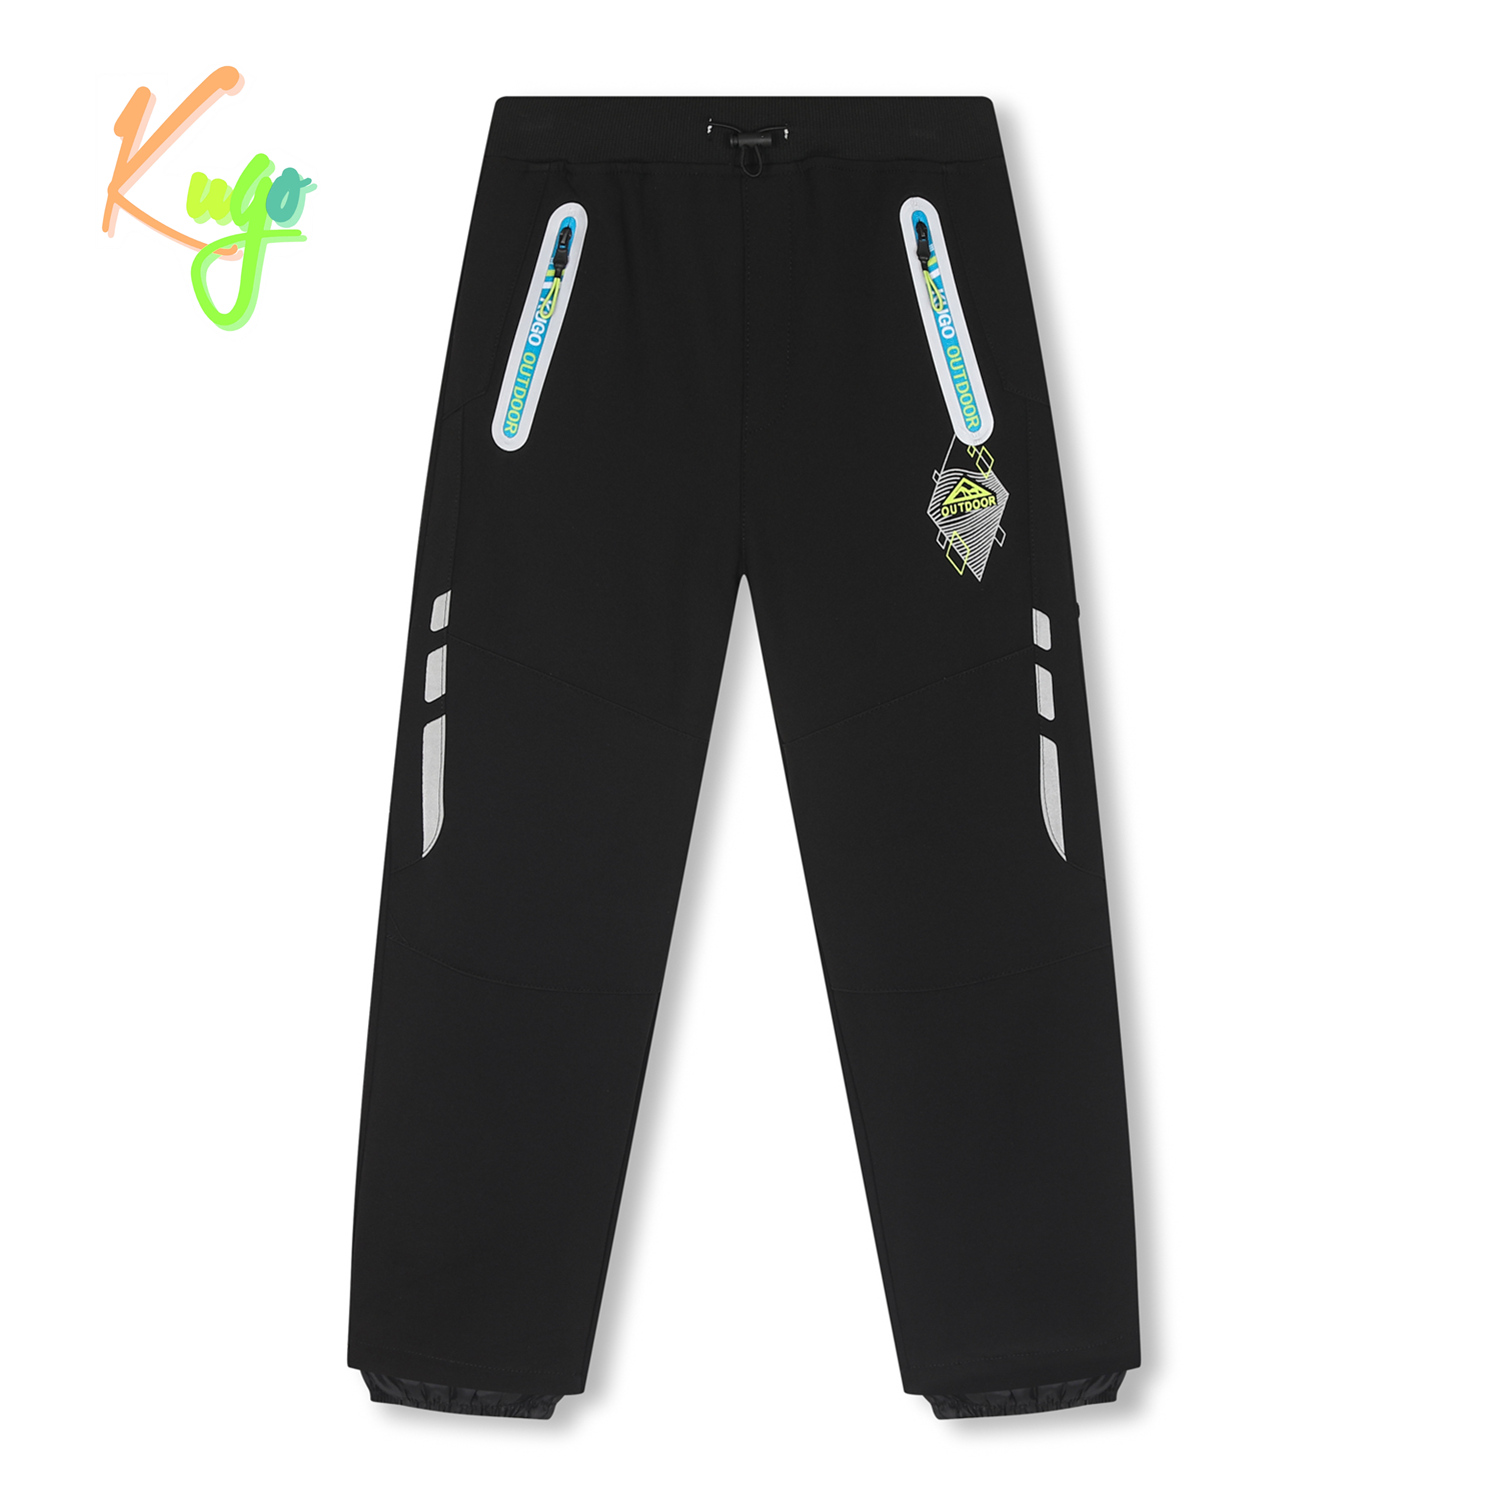 Chlapecké softshellové kalhoty, zateplené - KUGO HK2516, celočerná Barva: Černá, Velikost: 140